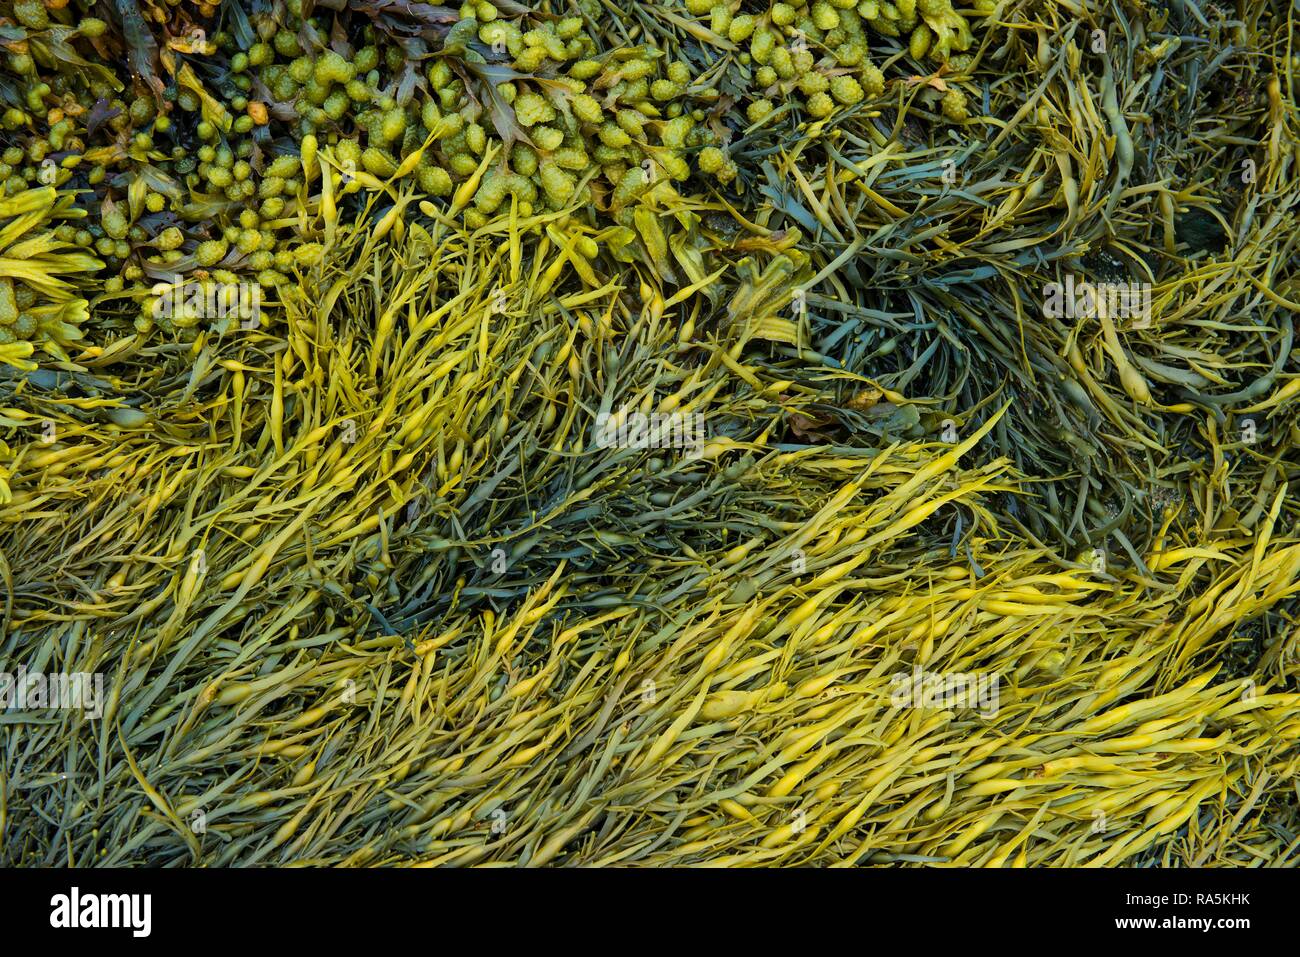 Divers, algues marines (Fucus spiralis rack en spirale), canalisé rack (Pelvetia canaliculata), Département Côtes-d'Armor Banque D'Images